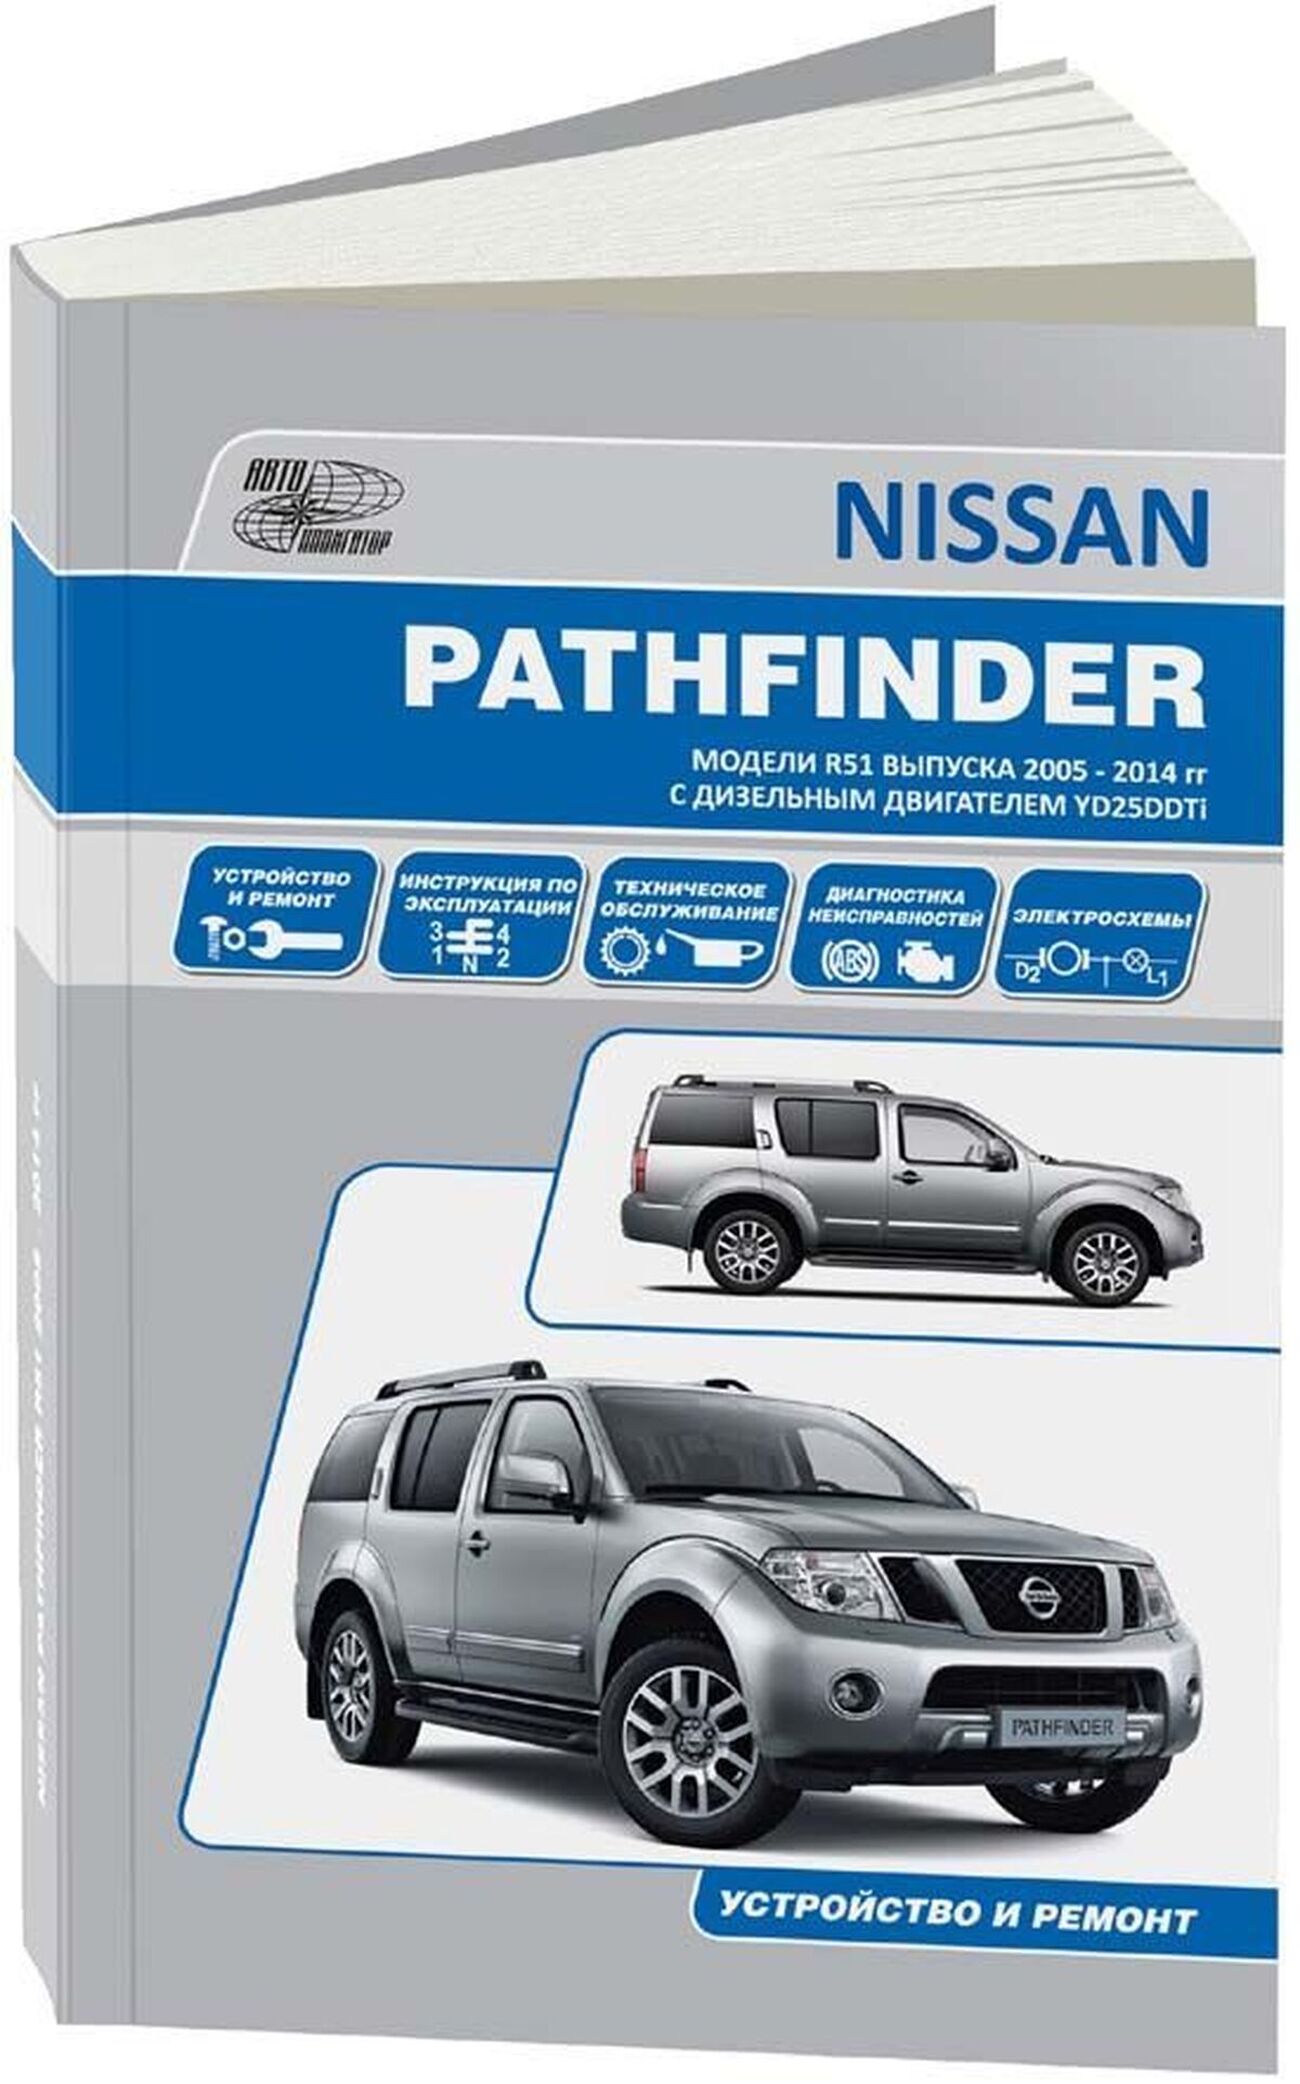 Книга: NISSAN PATHFINDER R51 (д) 2005-2014 г.в., рем., экспл., то | Автонавигатор